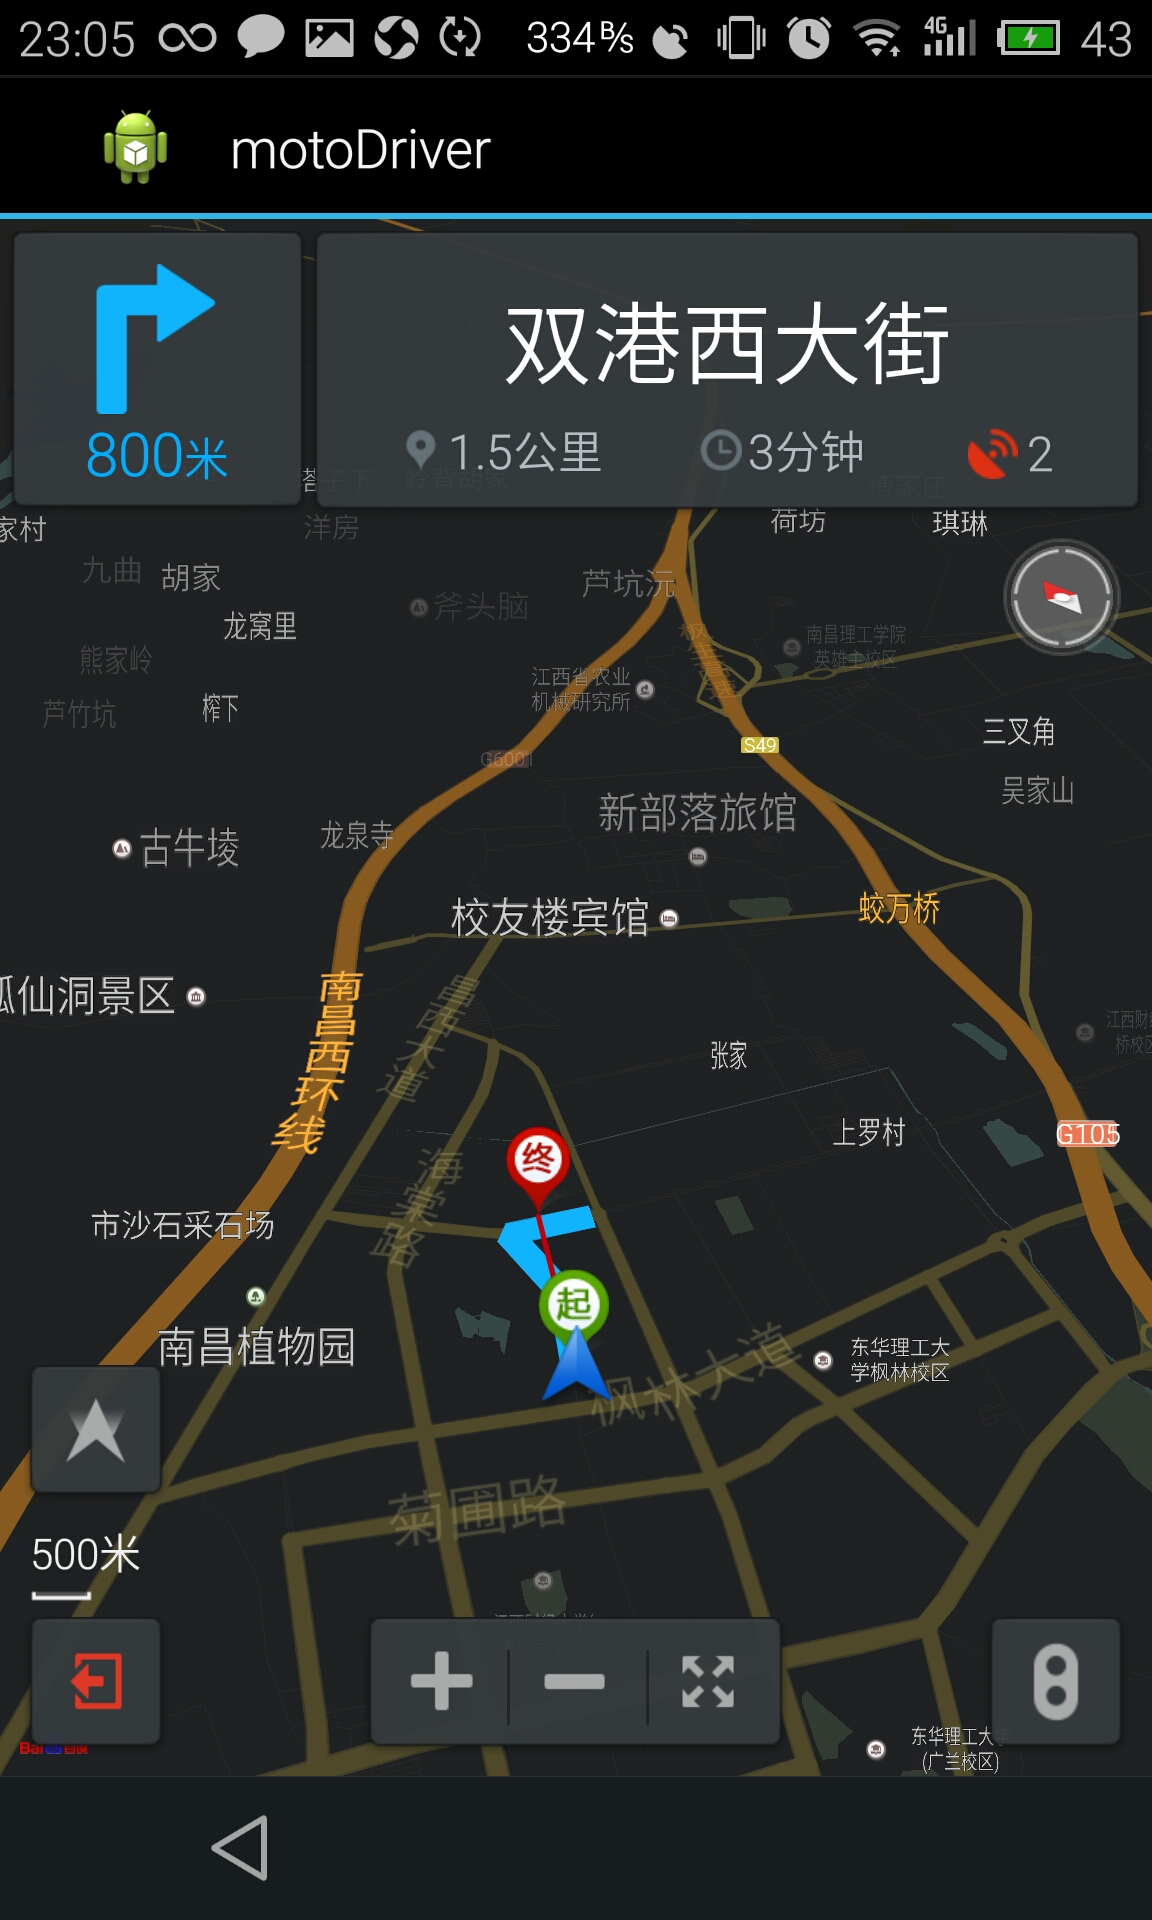 上海市及周边地图,上海市街道,上海市宝山区_大山谷图库